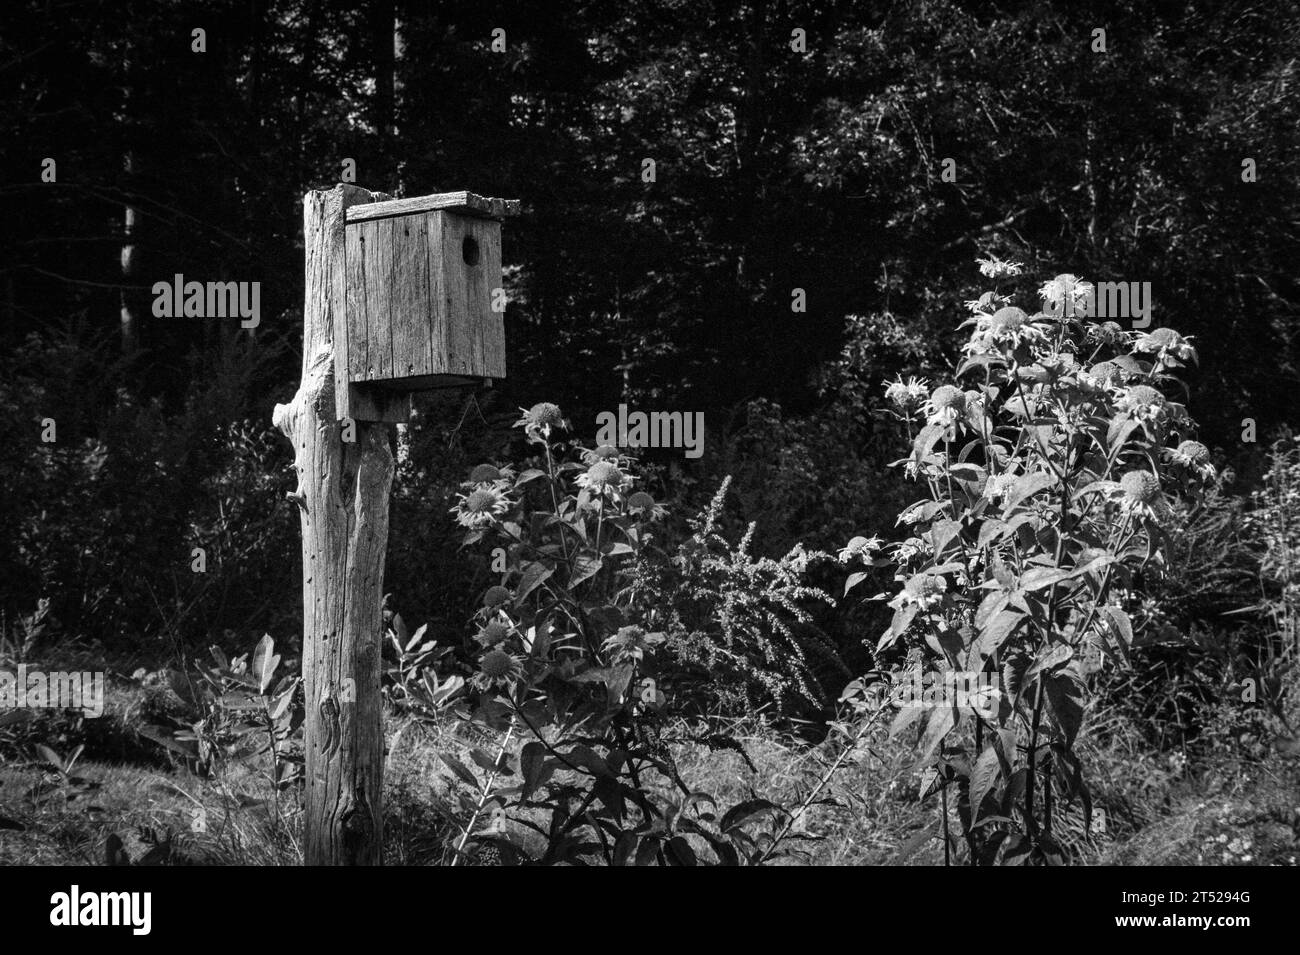 Un nichoir en bois perché sur un poteau de bois usé au milieu d'un champ fleuri de fleurs sauvages. L'image a été capturée en noir analogique et blanc Banque D'Images